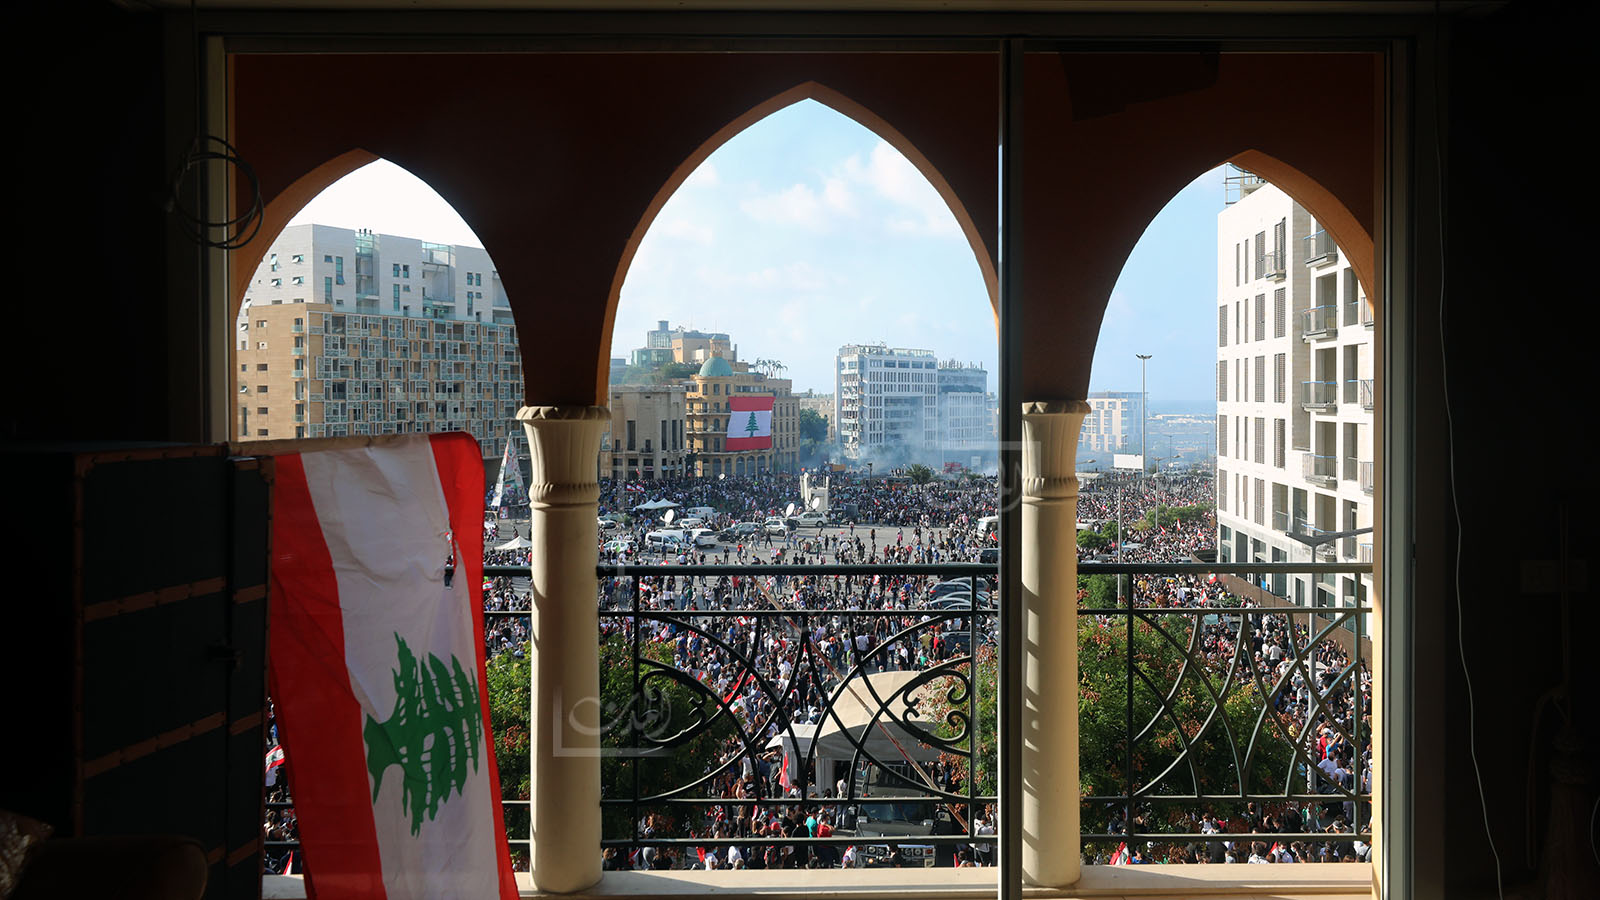 بعد النكبة: بيروت في عيون زوارها